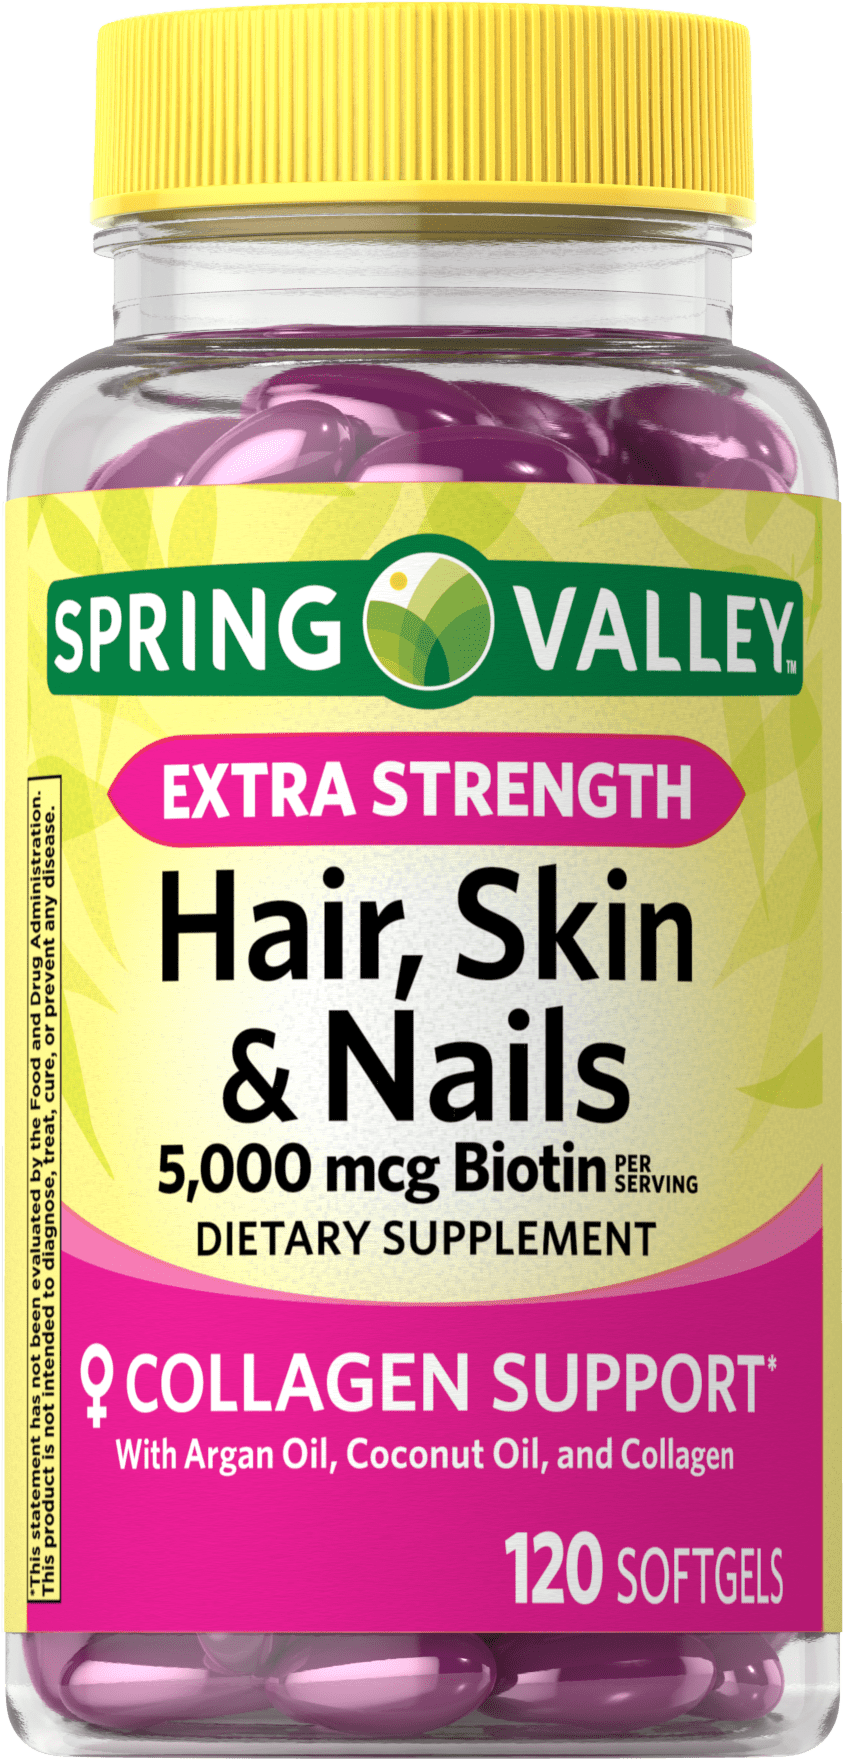 Swagat Herbals Biotin Vegan  Pack of 30 cap  HairSkin  Nails   Ayubazar